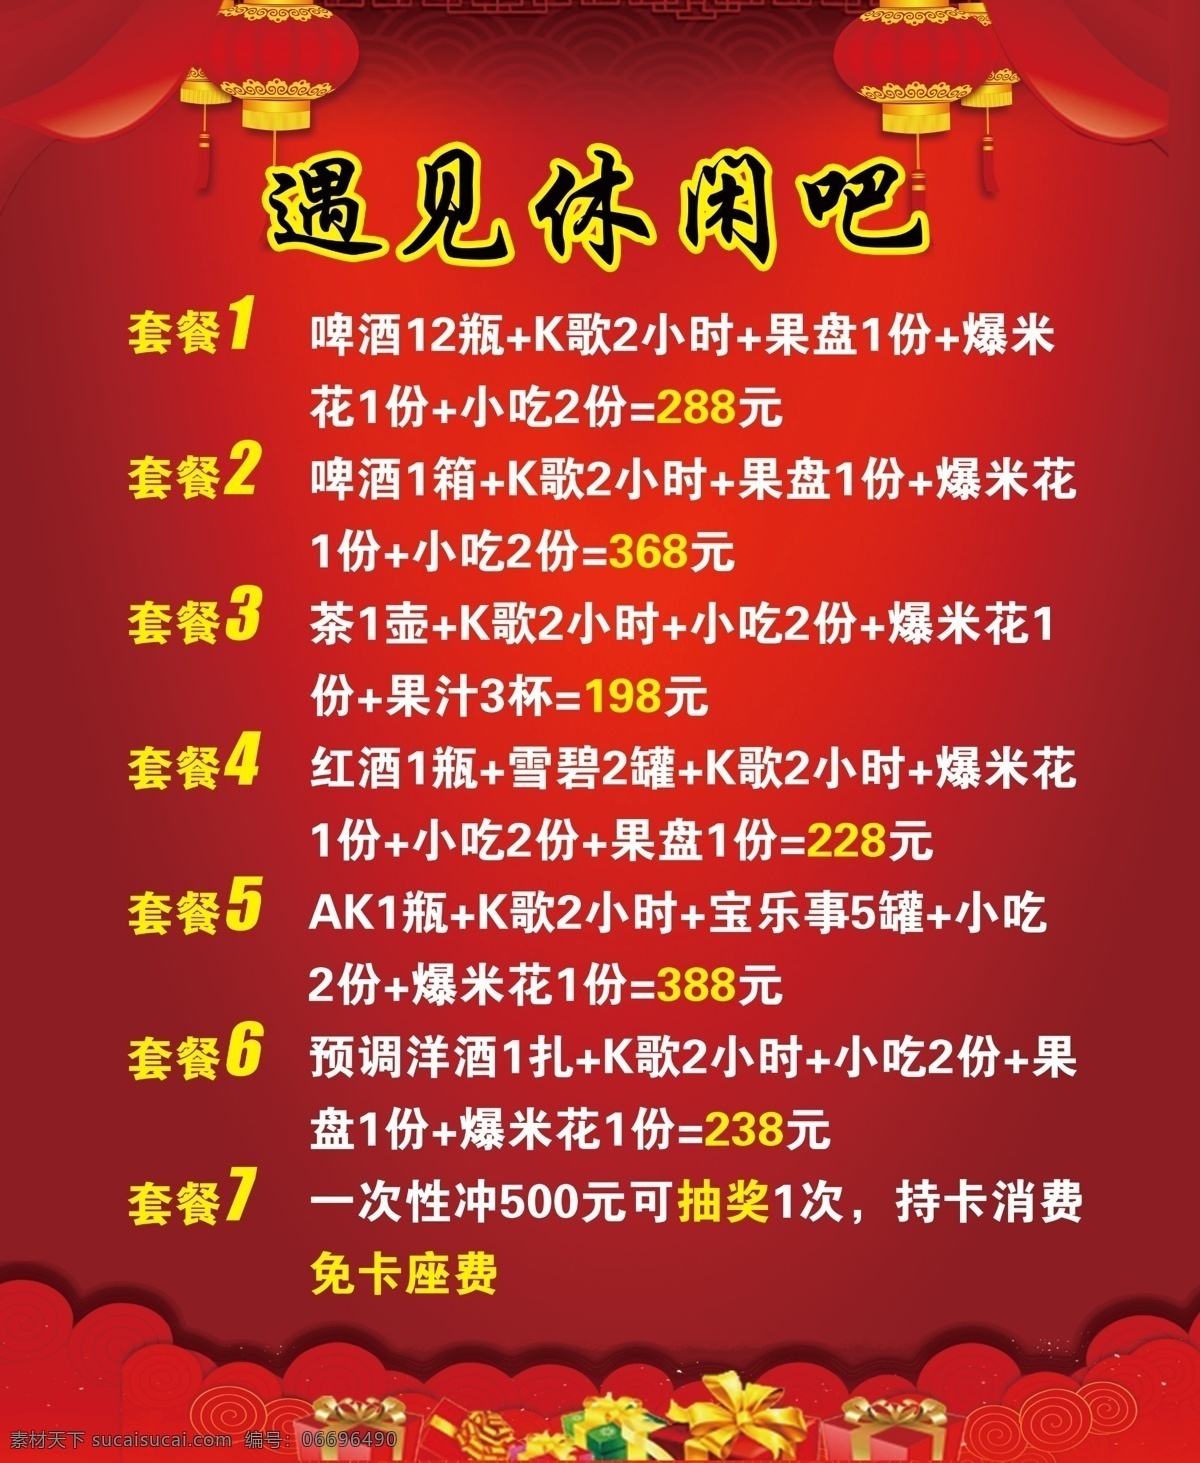 ktv 套餐 海报 图 中国风 灯笼 红色背景 丝带 祥云 礼物盒